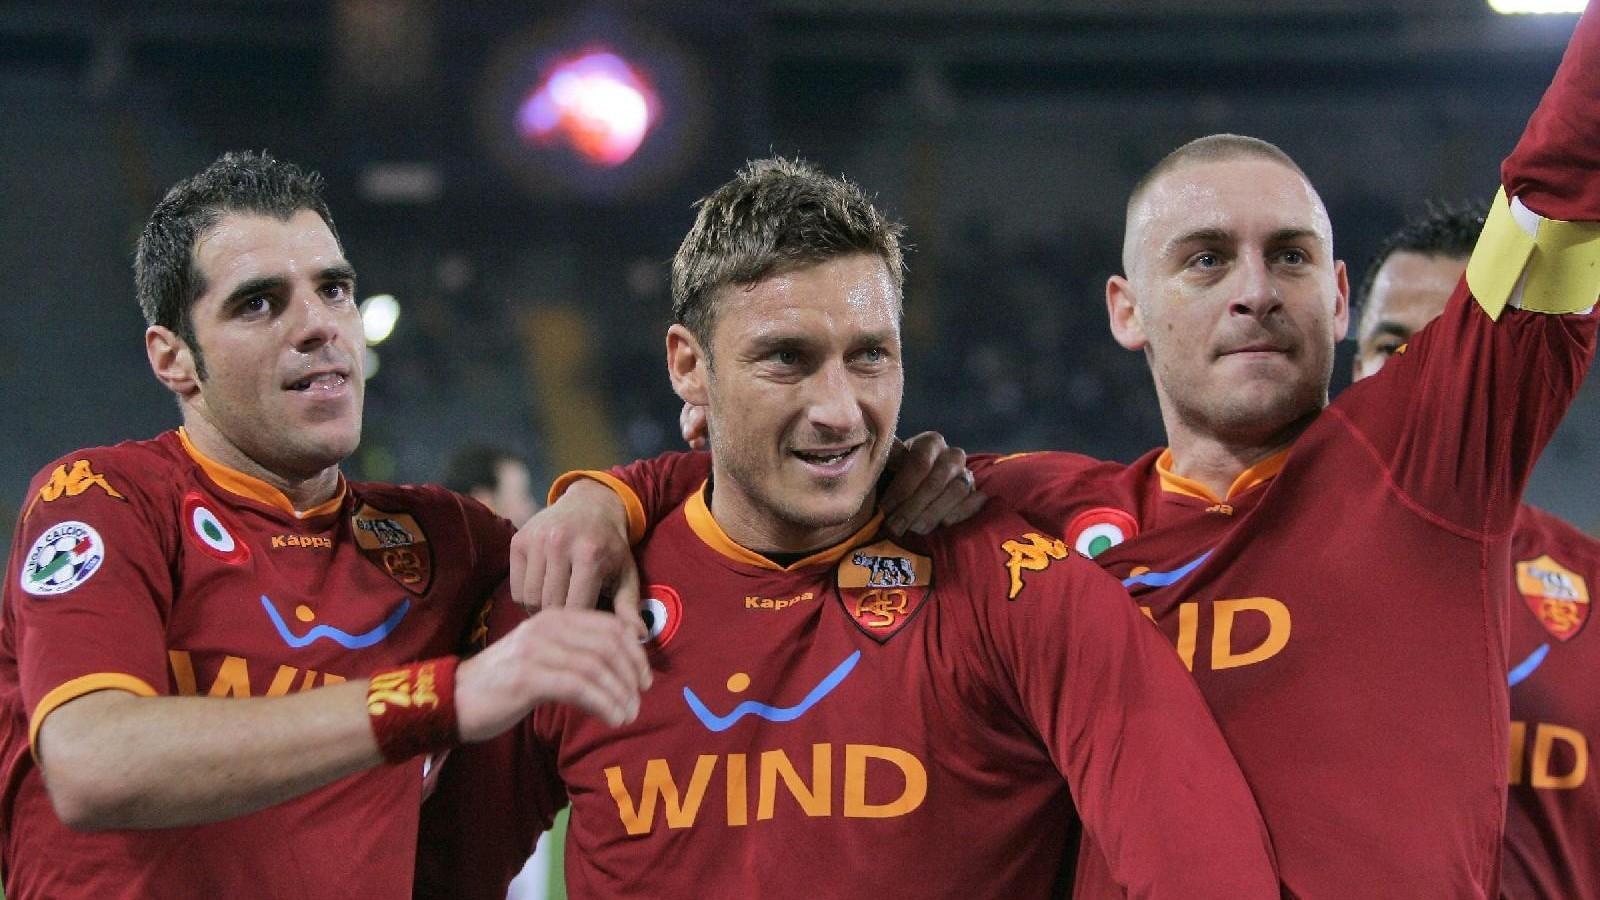 VIDEO - Accadde oggi: dieci anni fa Totti ha segnato il gol numero 200 in giallorosso